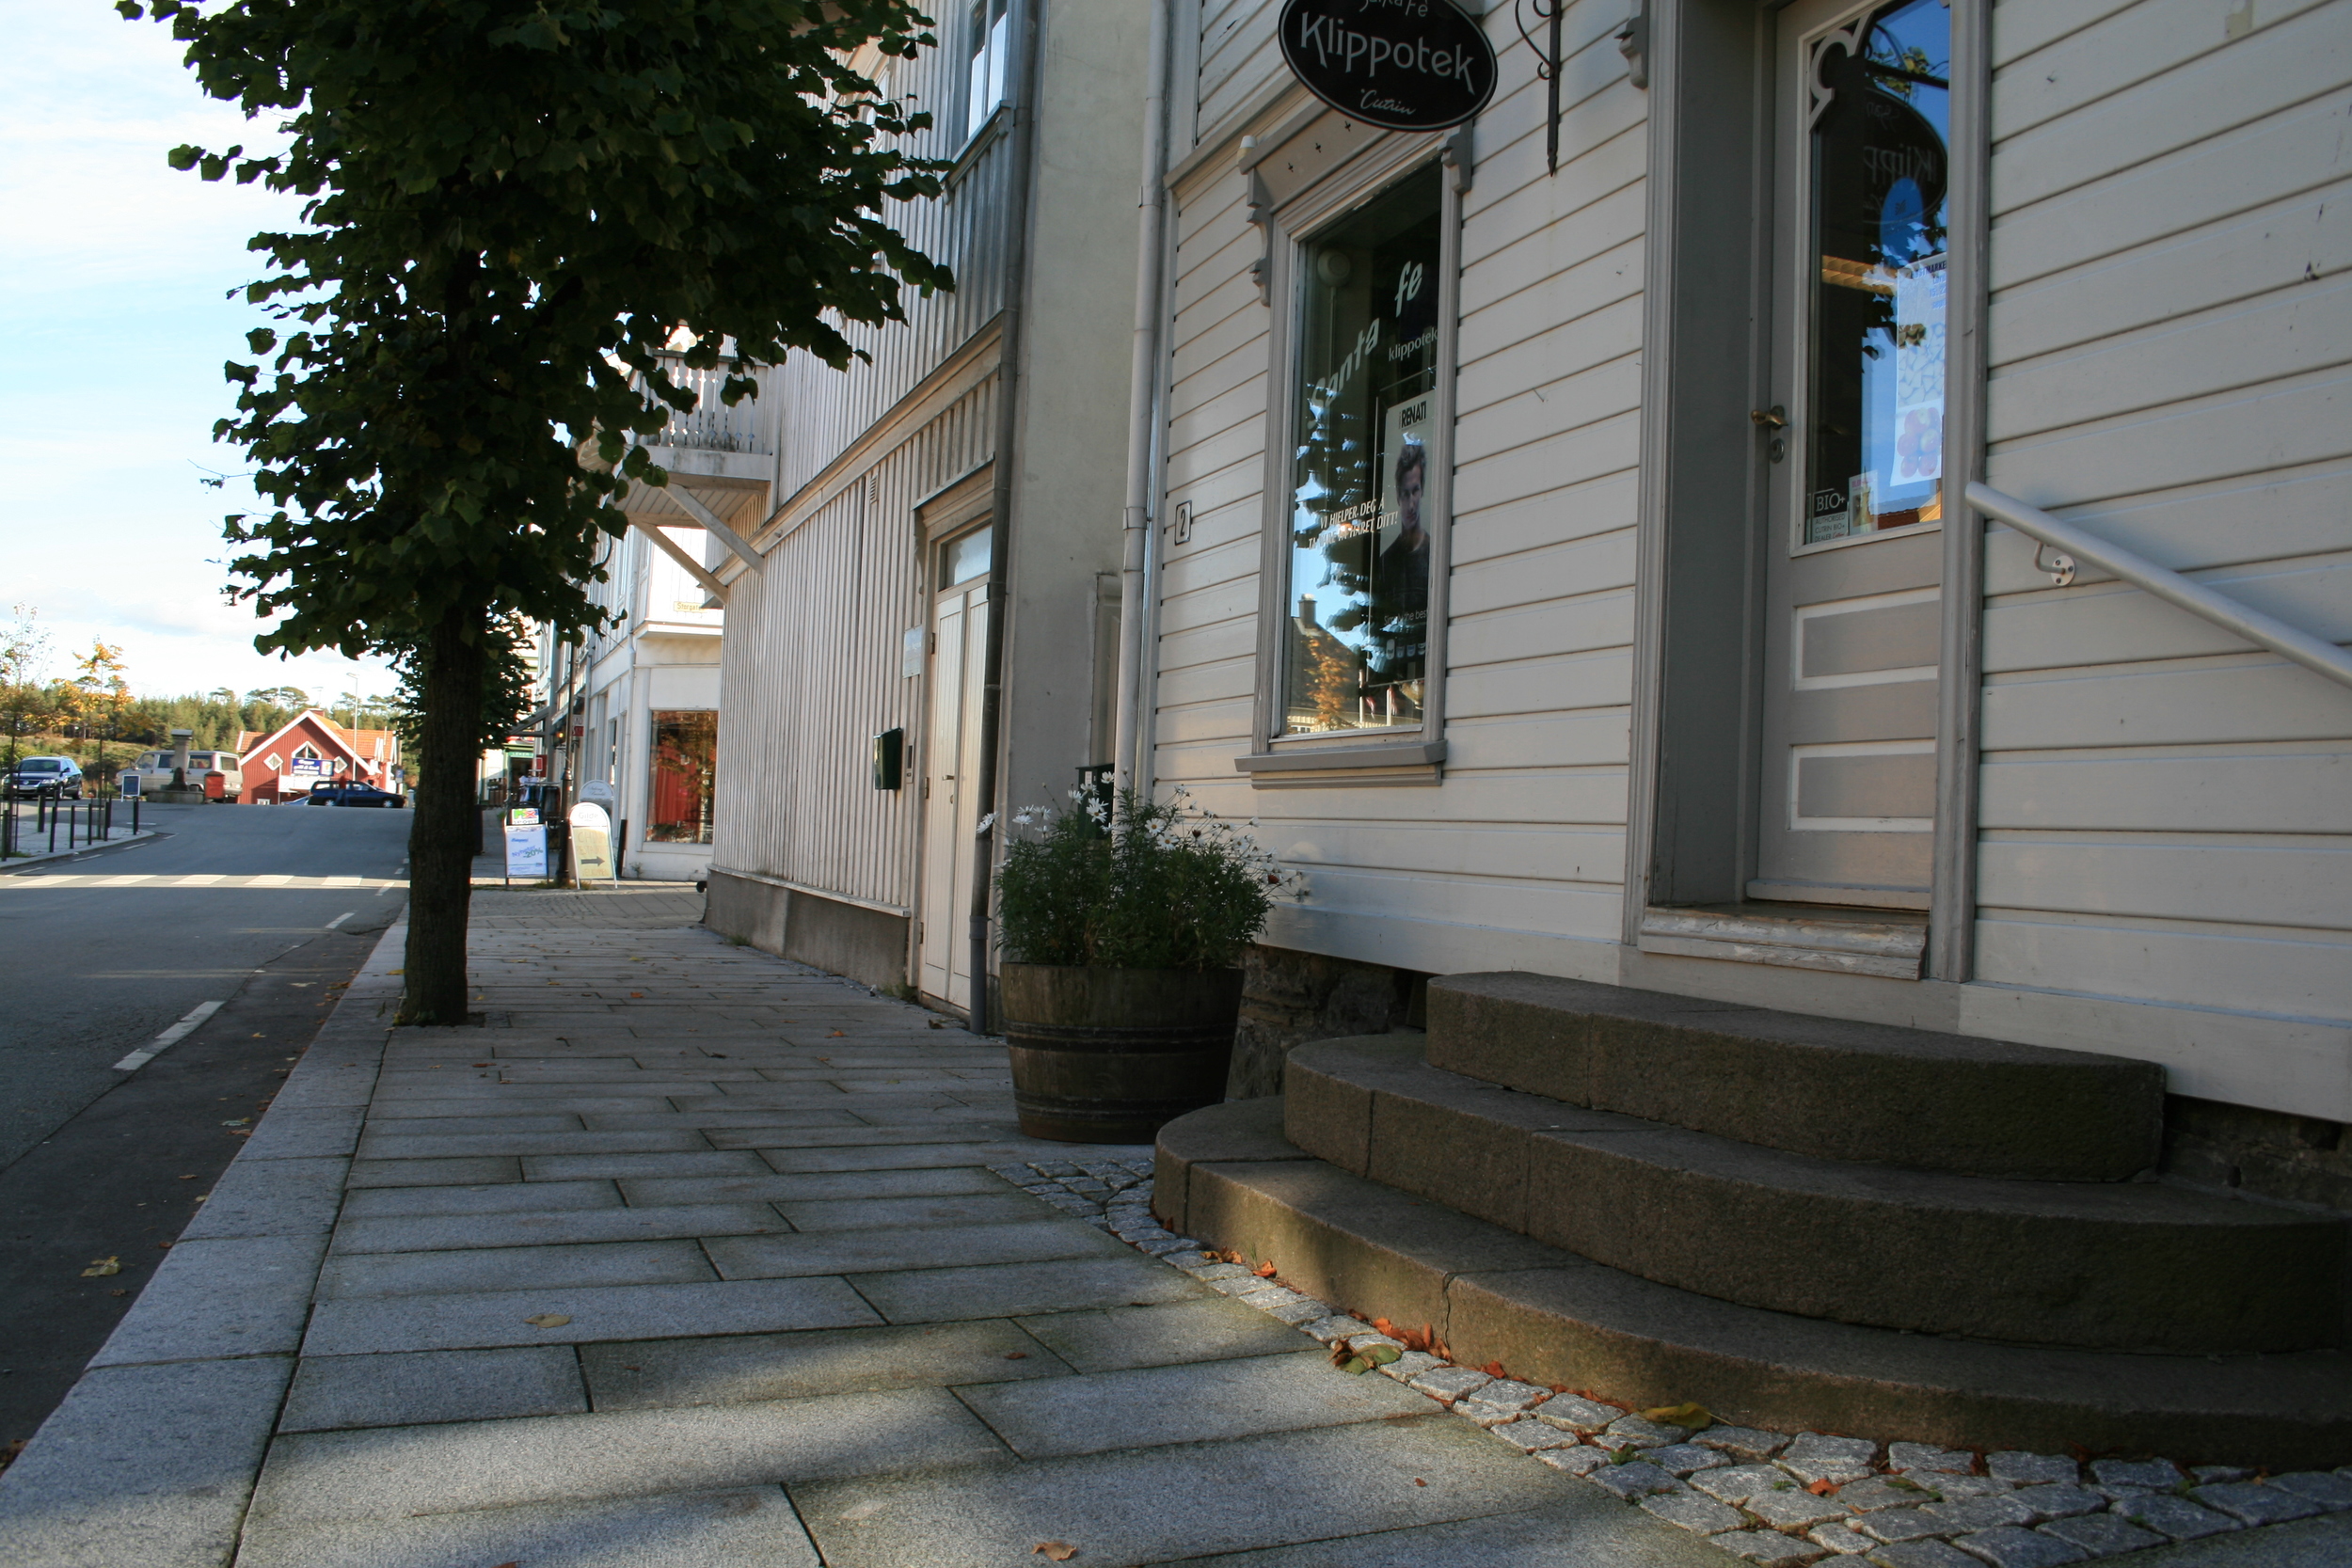   Fortauene er enkle, solide og kler småbyen Langesund  